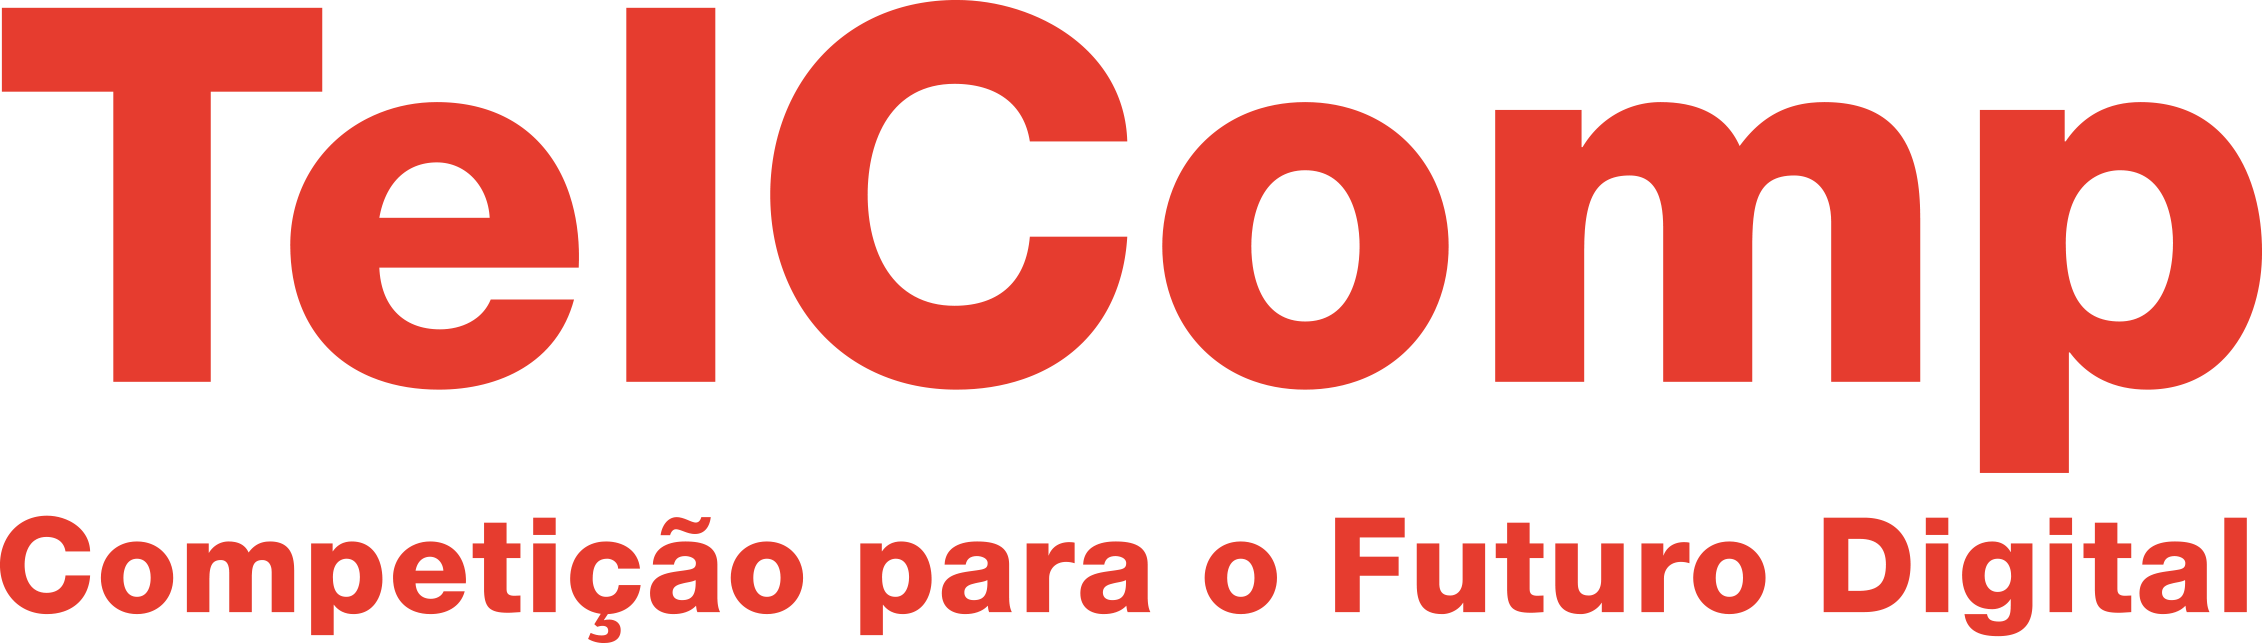 TelComp - Associação Brasileira das Prestadoras de Serviços de Telecomunicações Competitivas